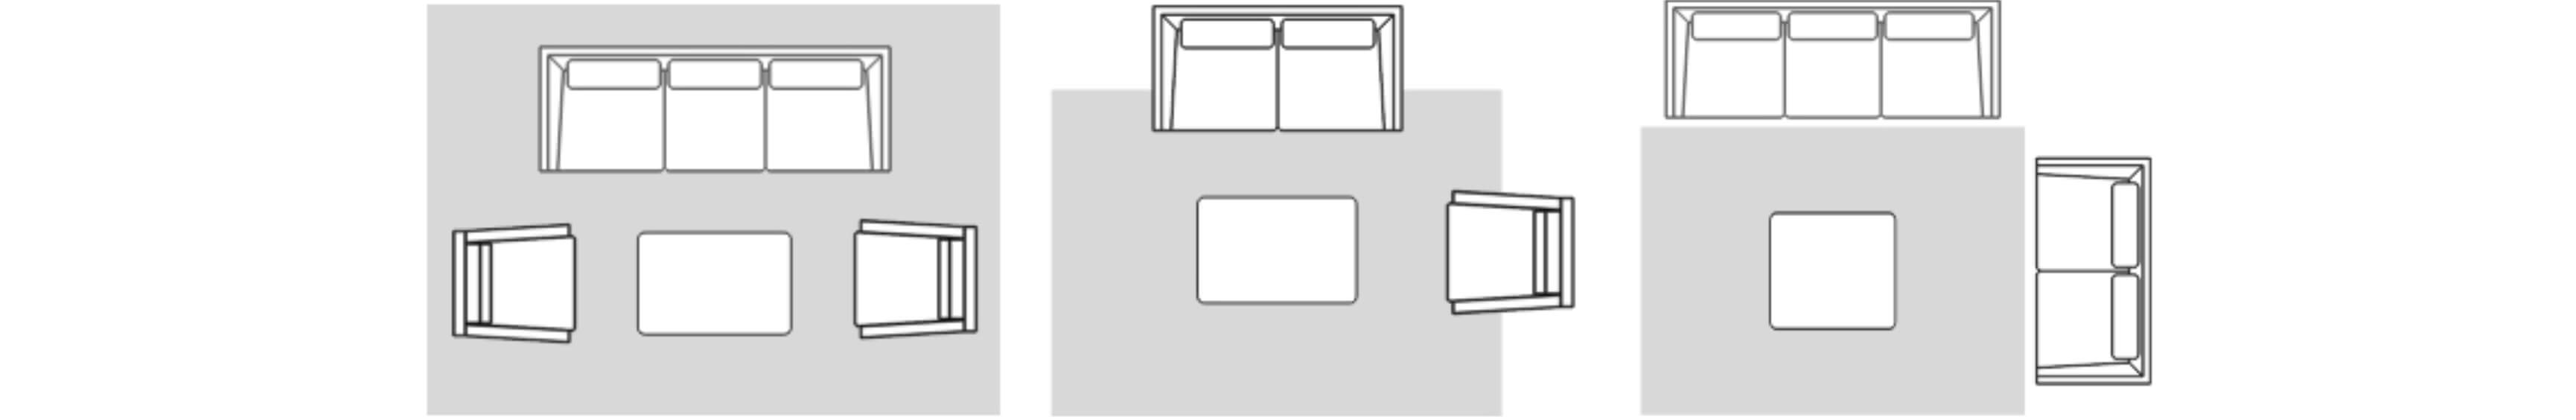 Room Diagram 1